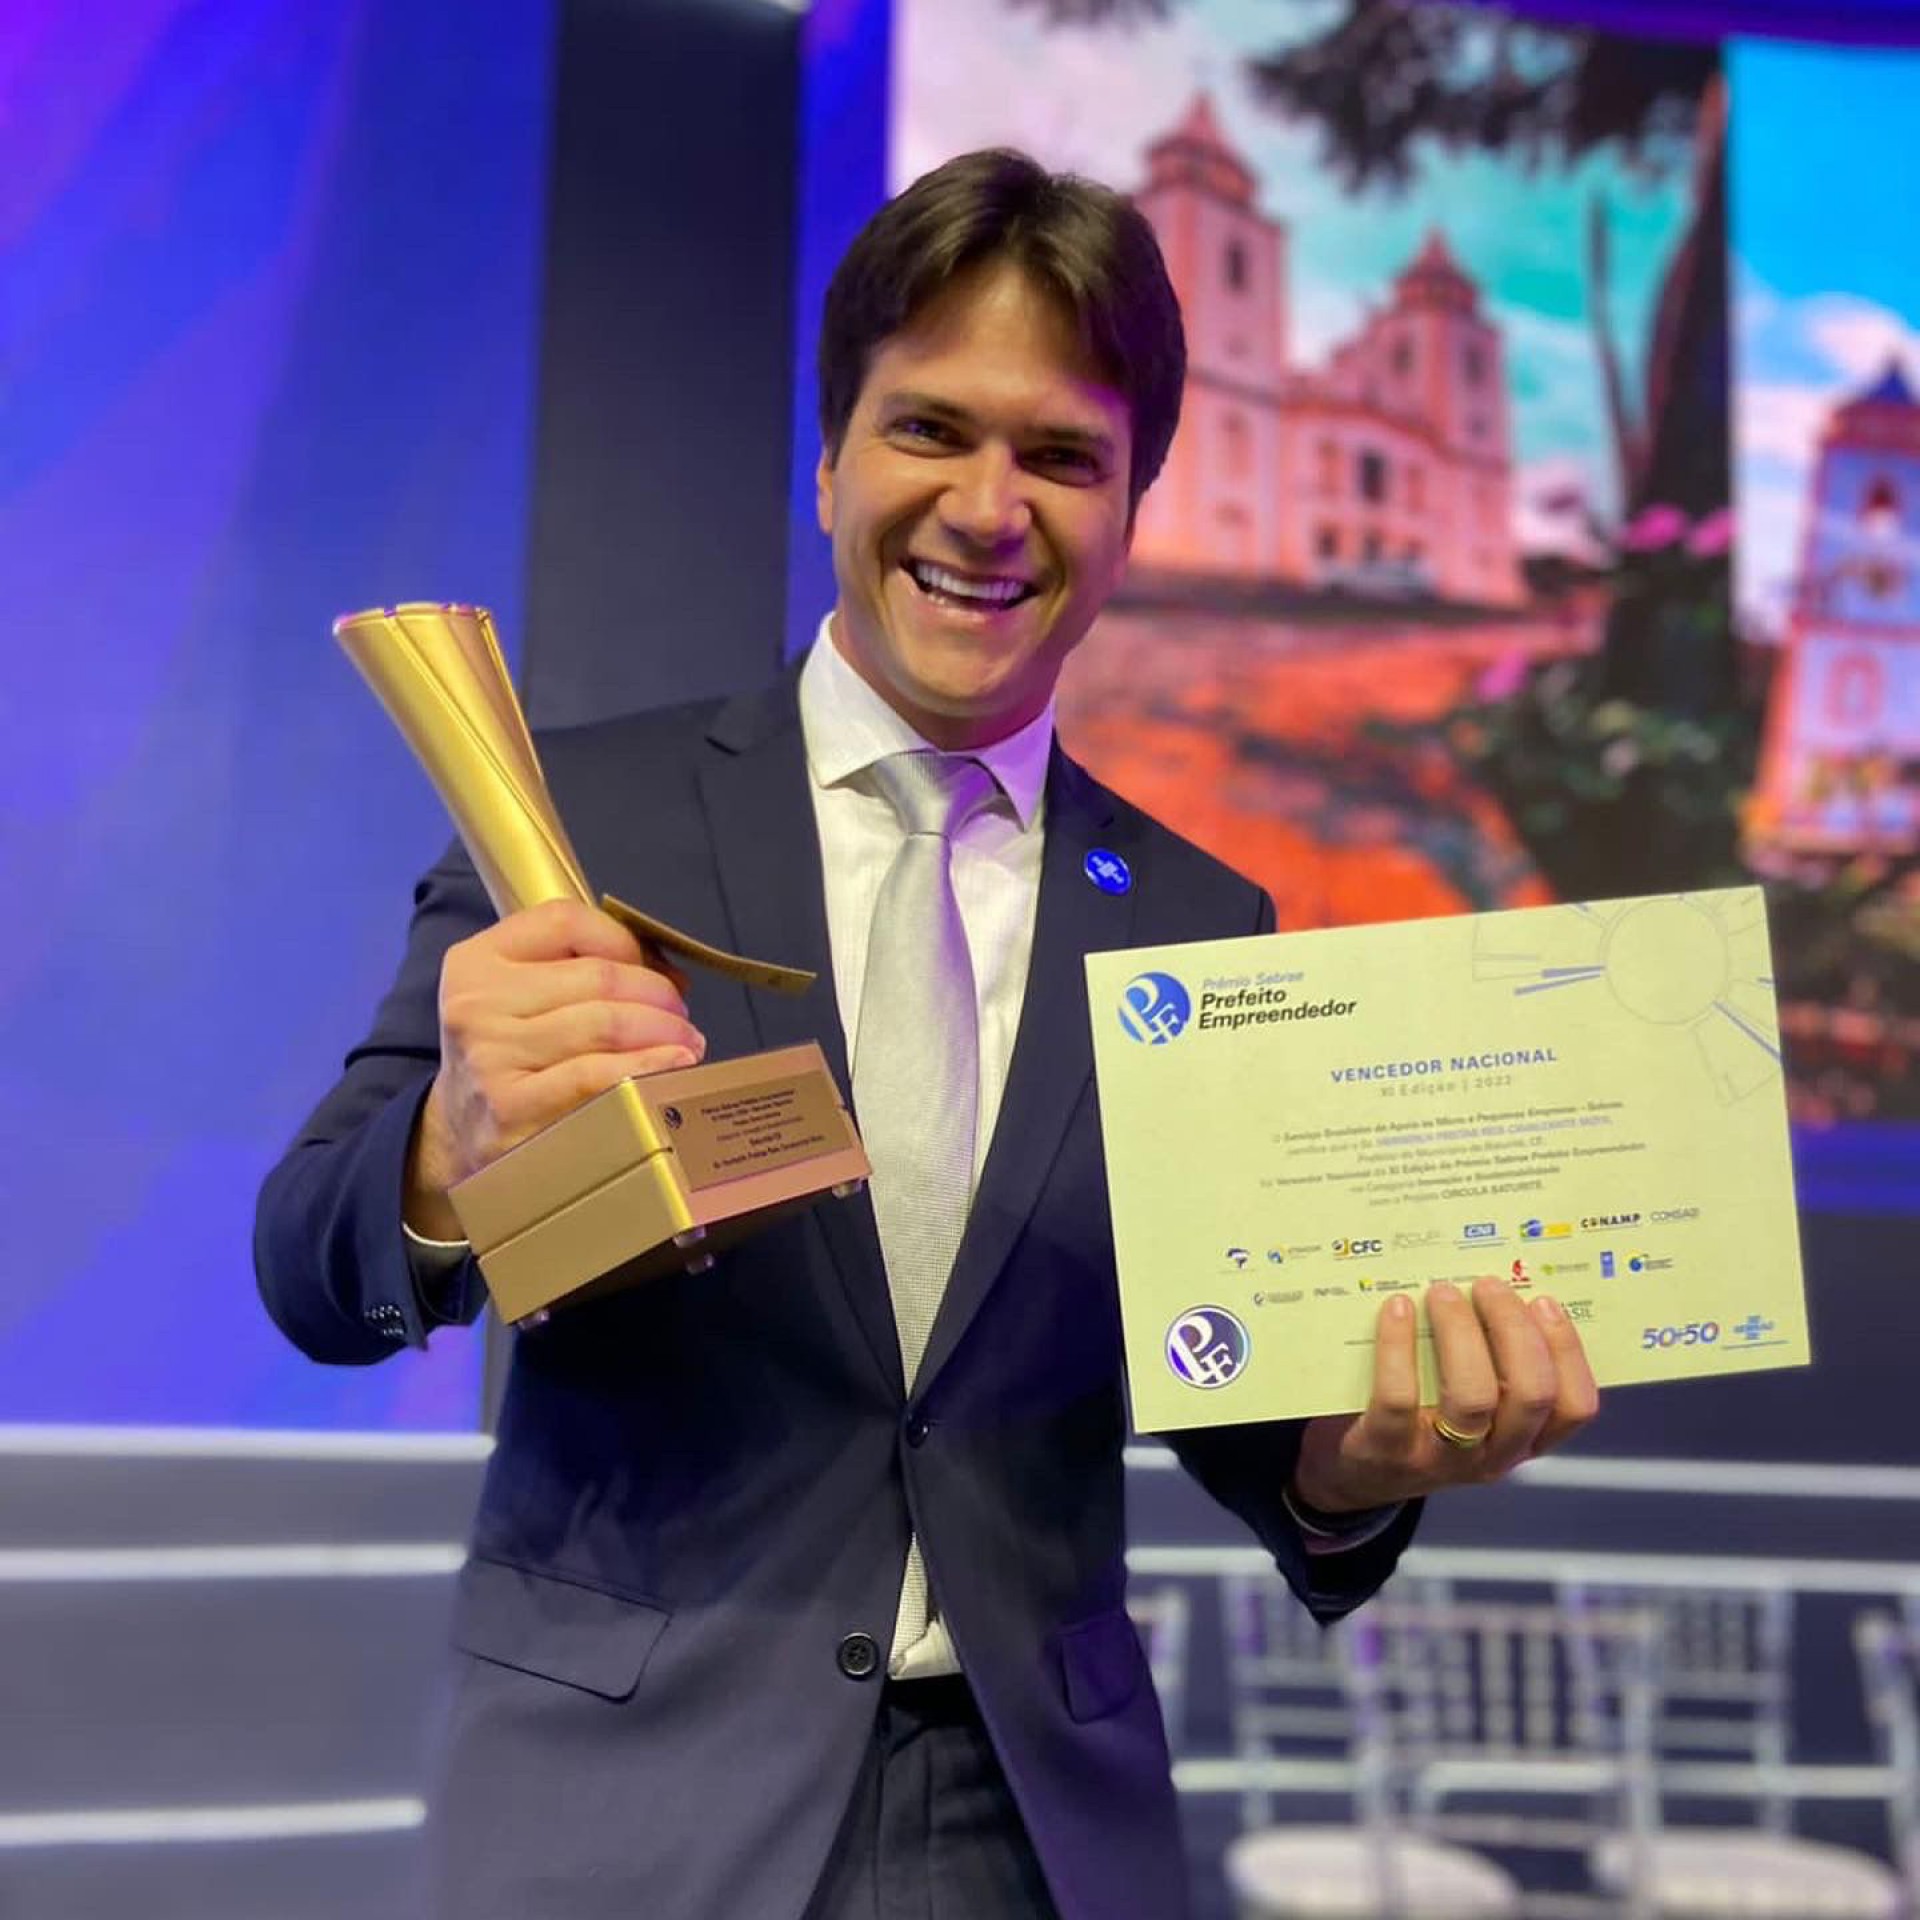 Prefeitura de Baturité recebeu o Prêmio Sebrae Prefeito Empreendedor. Herberlh Mota também foi um dos agraciados com o prêmio Destaque Político – Melhores Prefeitos do Ceará